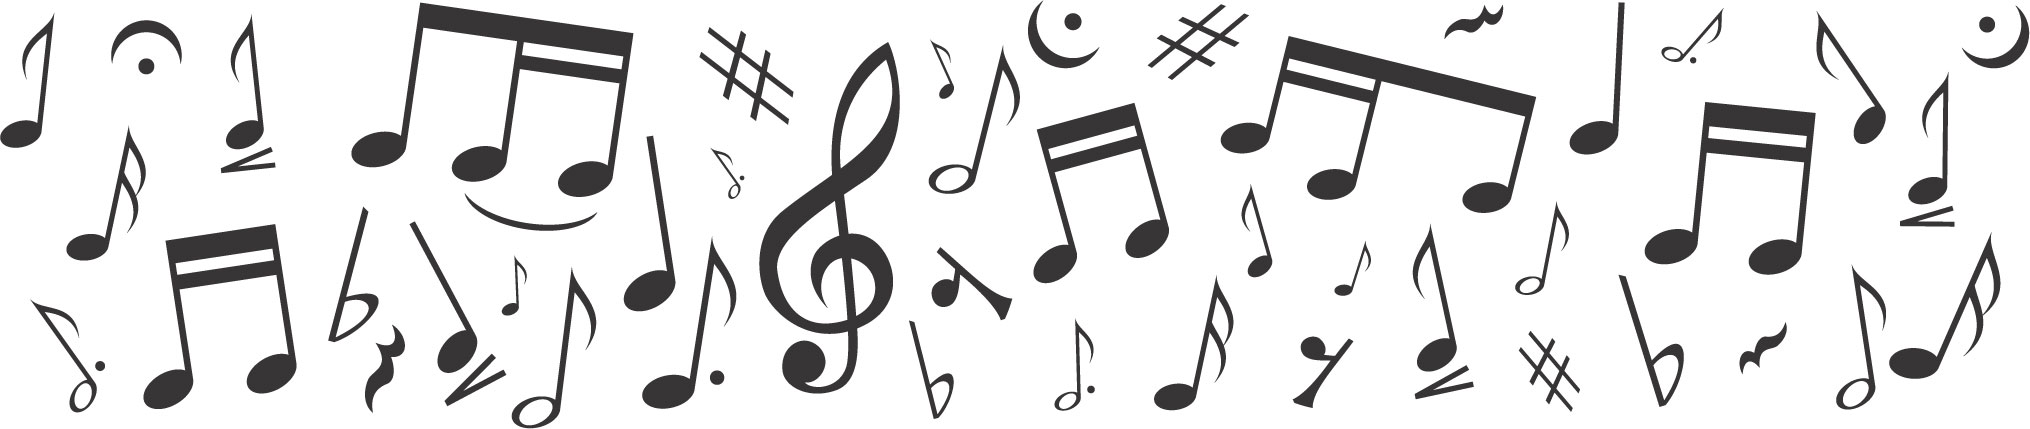 音楽・音符イラスト素材「音楽記号・音符の集まり」